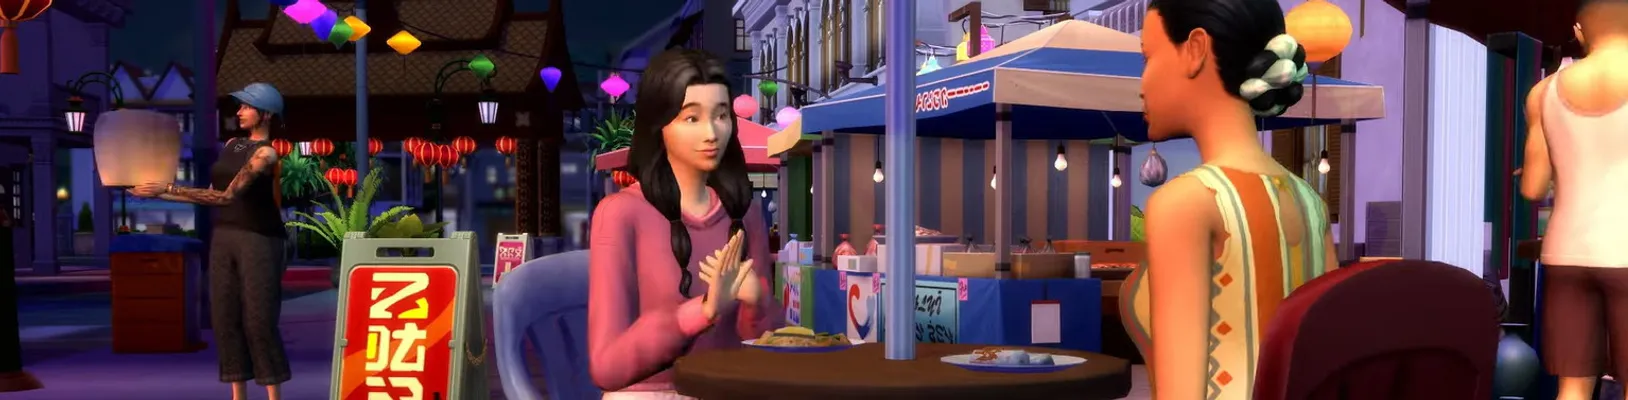 Staňte se pronajímatelem bytů v The Sims 4